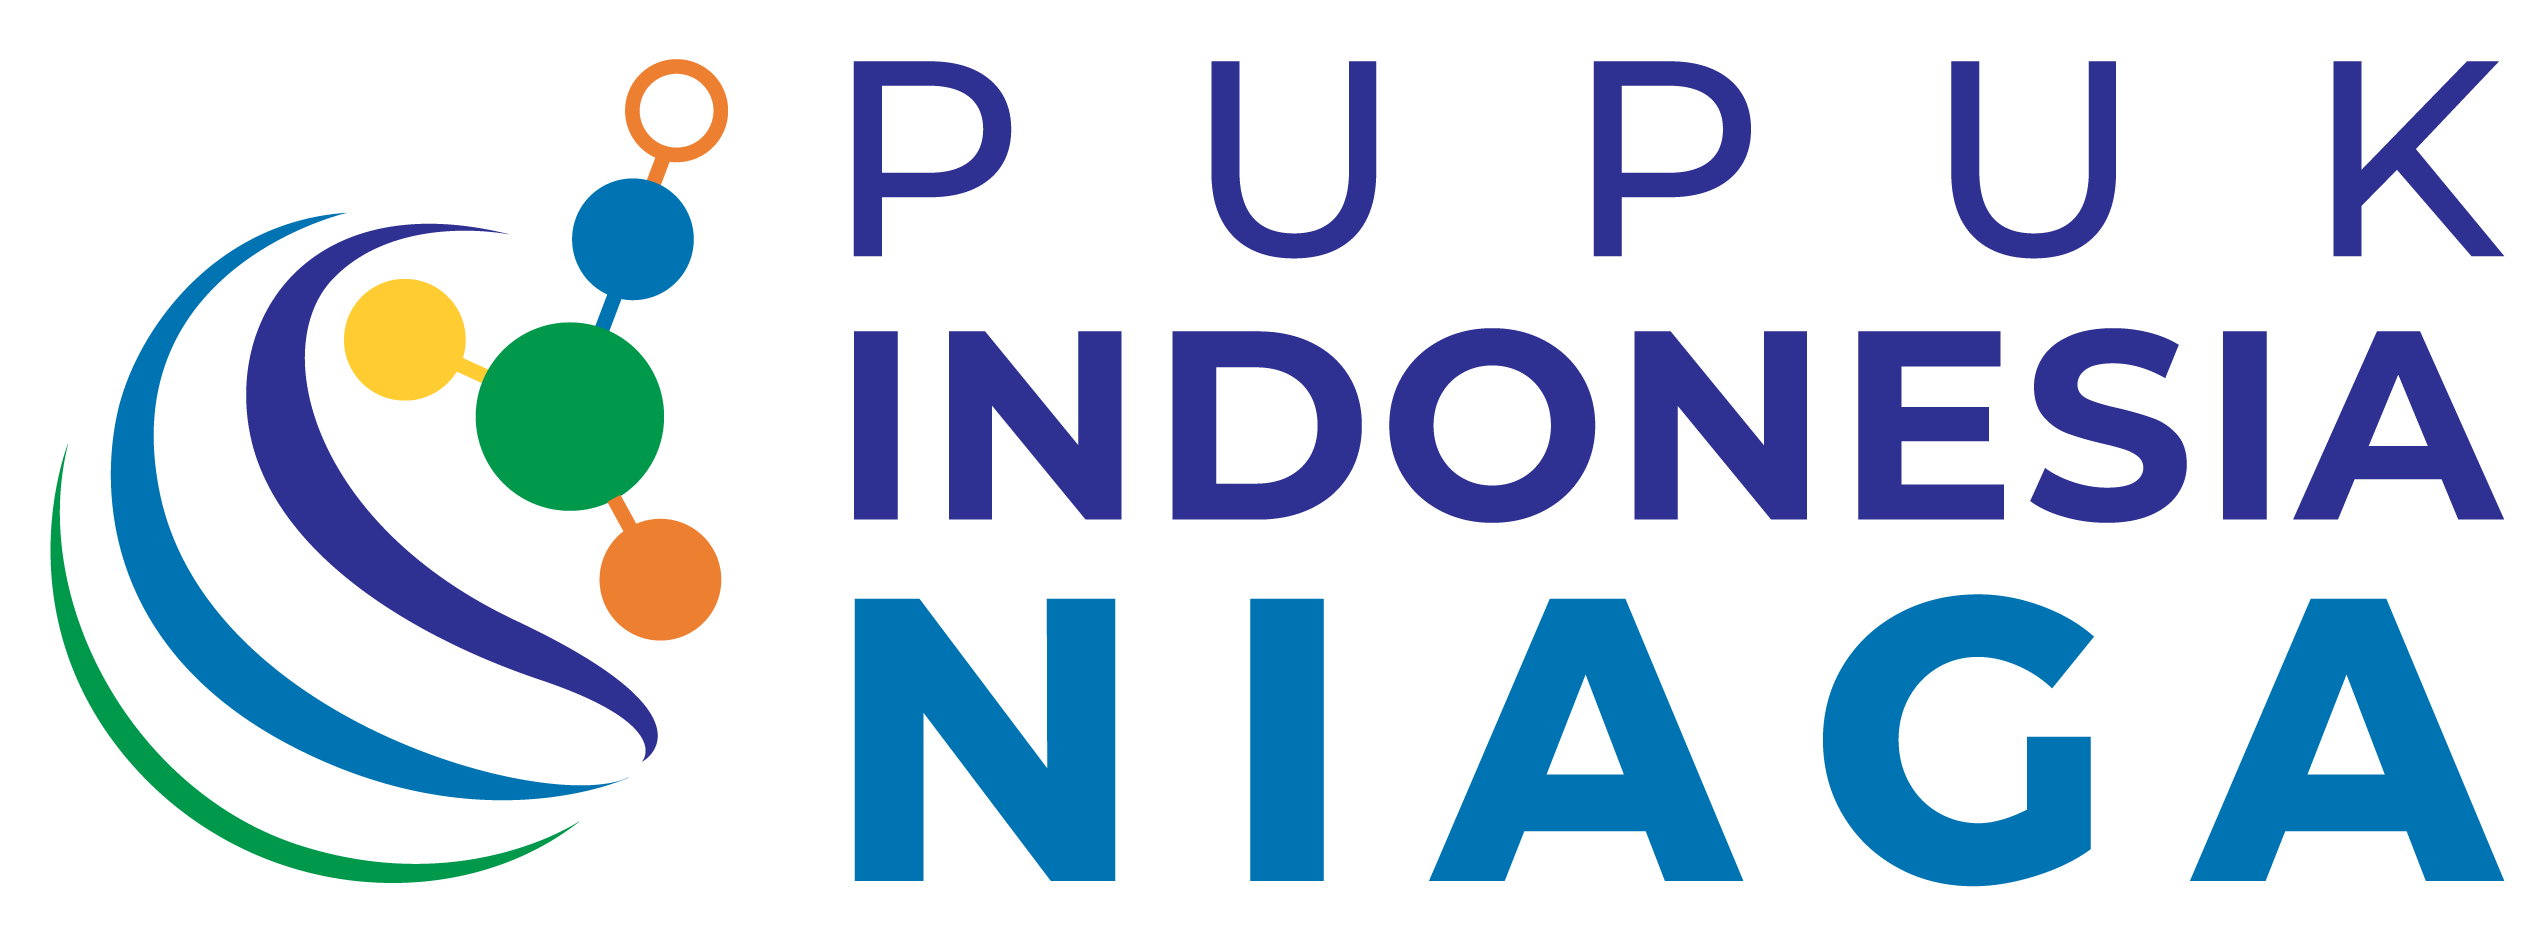 PT Pupuk Indonesia Niaga